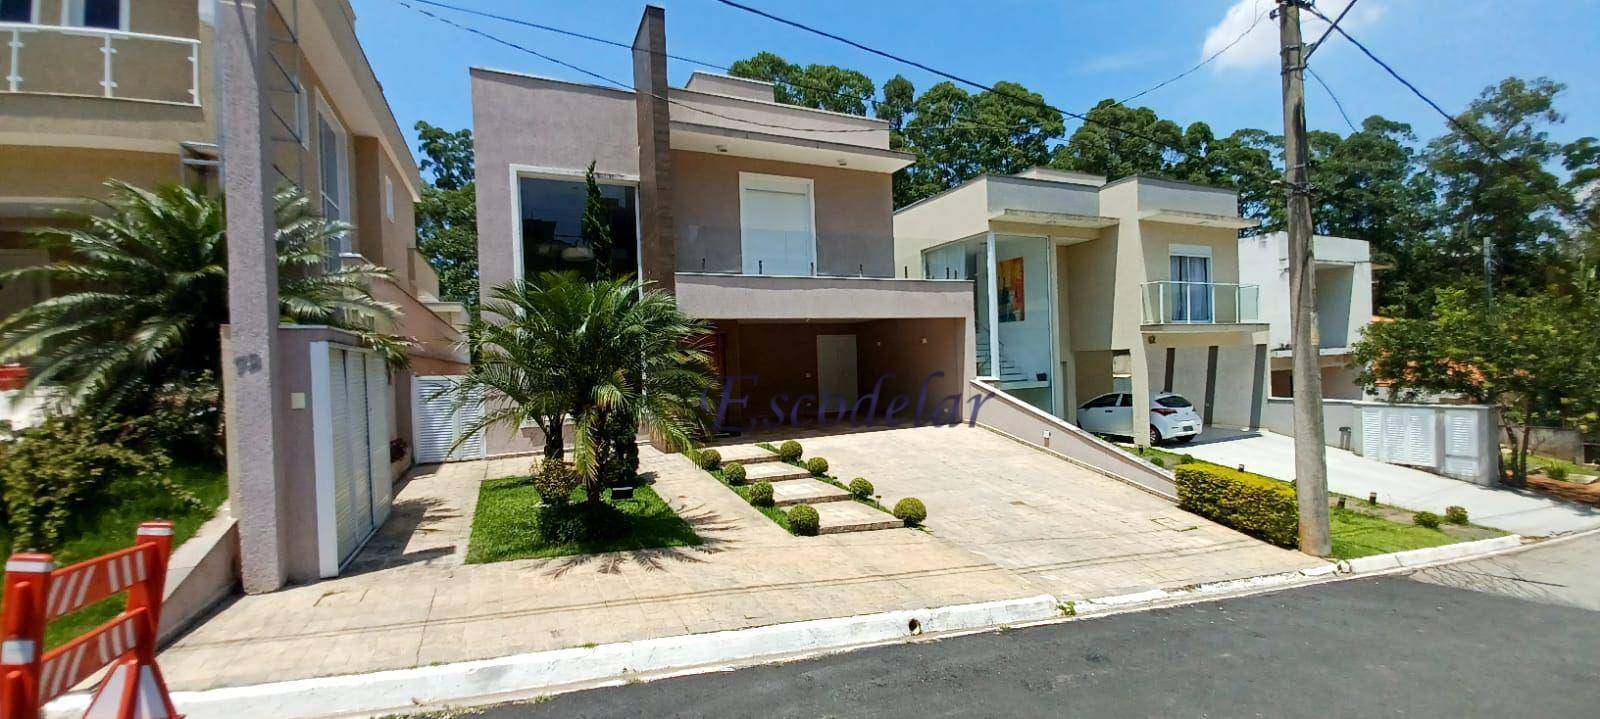 Casa à venda, 320 m² por R$ 1.900.000,00 - Itaqui - Itapevi/SP